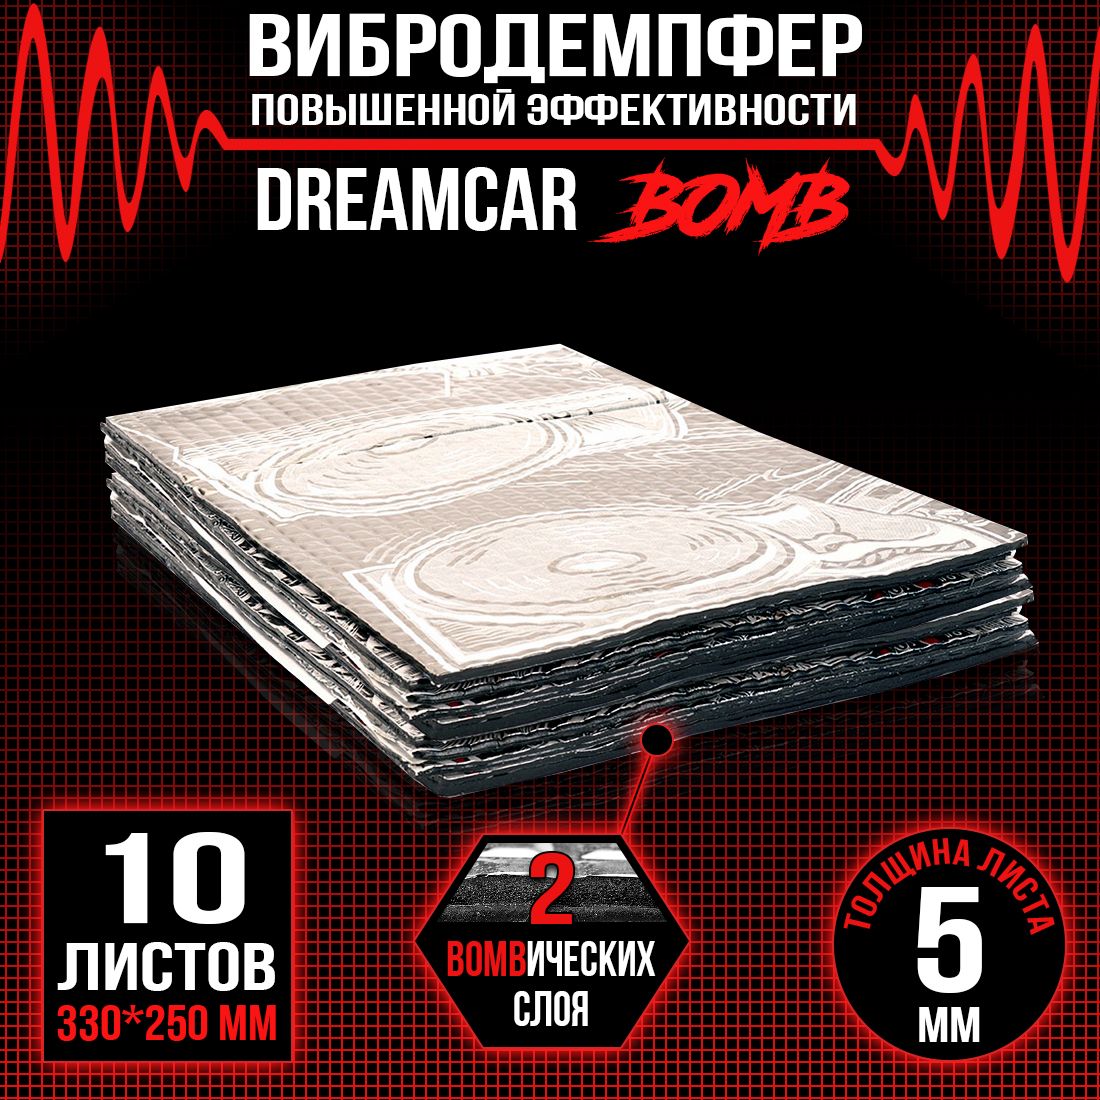 10 листов - Виброизоляция повышенного вибропоглощения c двойным слоем DreamCar Bomb 5мм 33х25см - 10 литсов